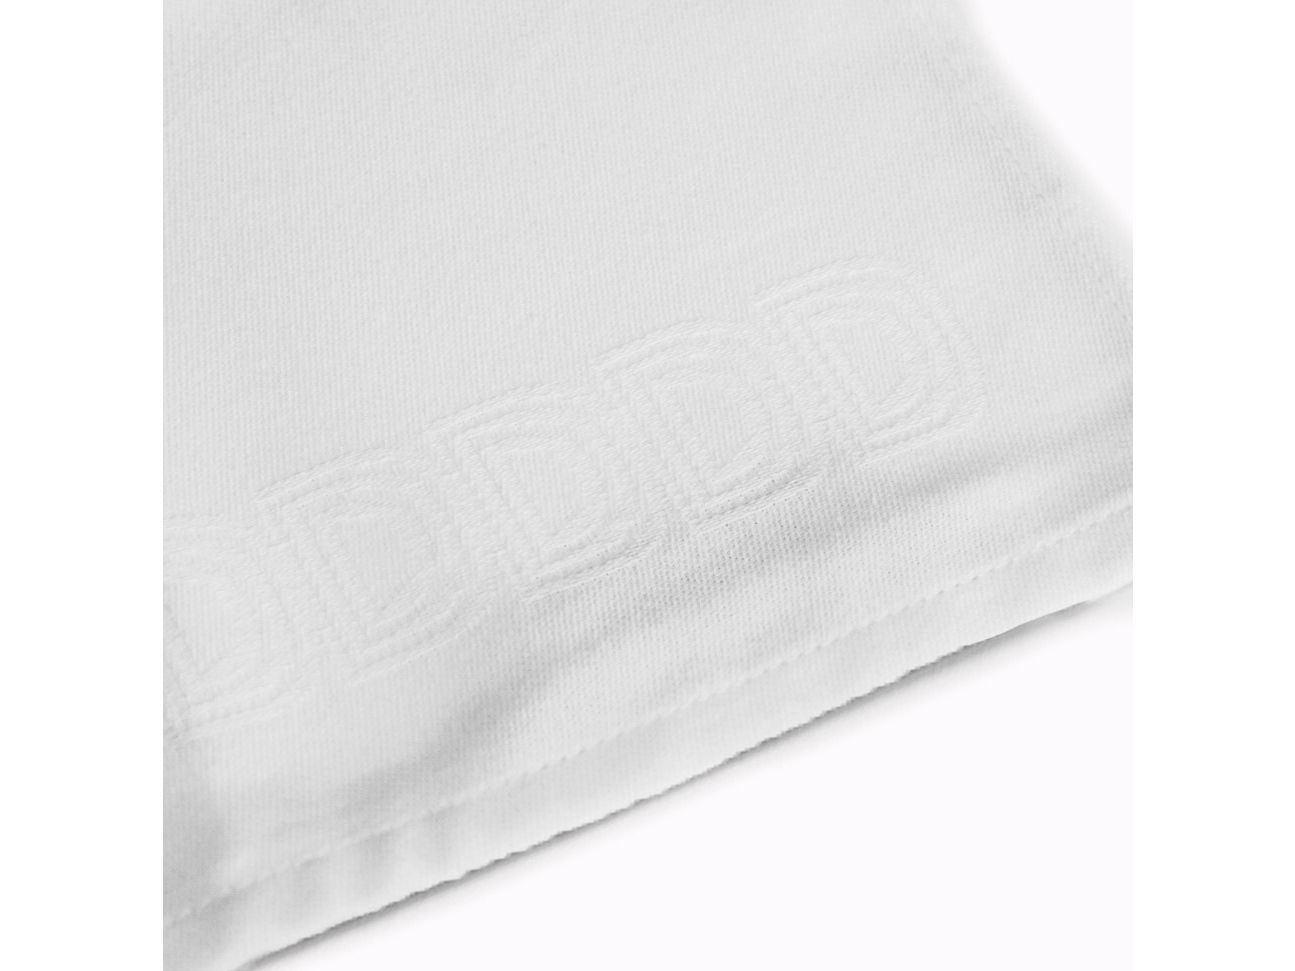 6x-ddddd-logo-kuchentuch-60-x-65-cm